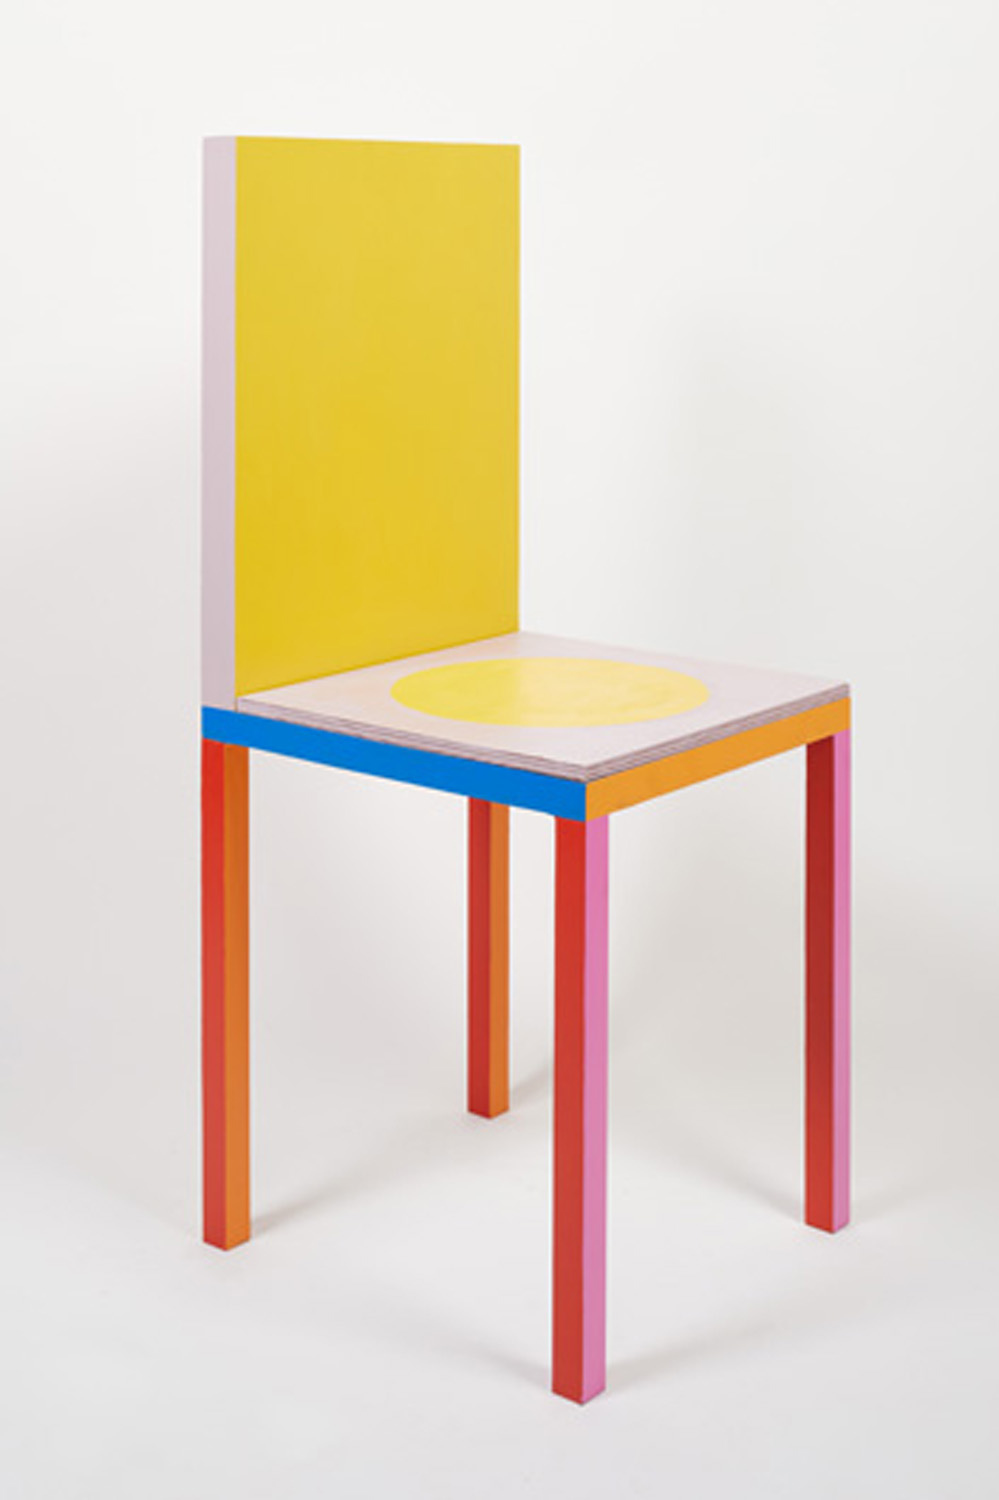 Yellow chair by Yinka Ilori